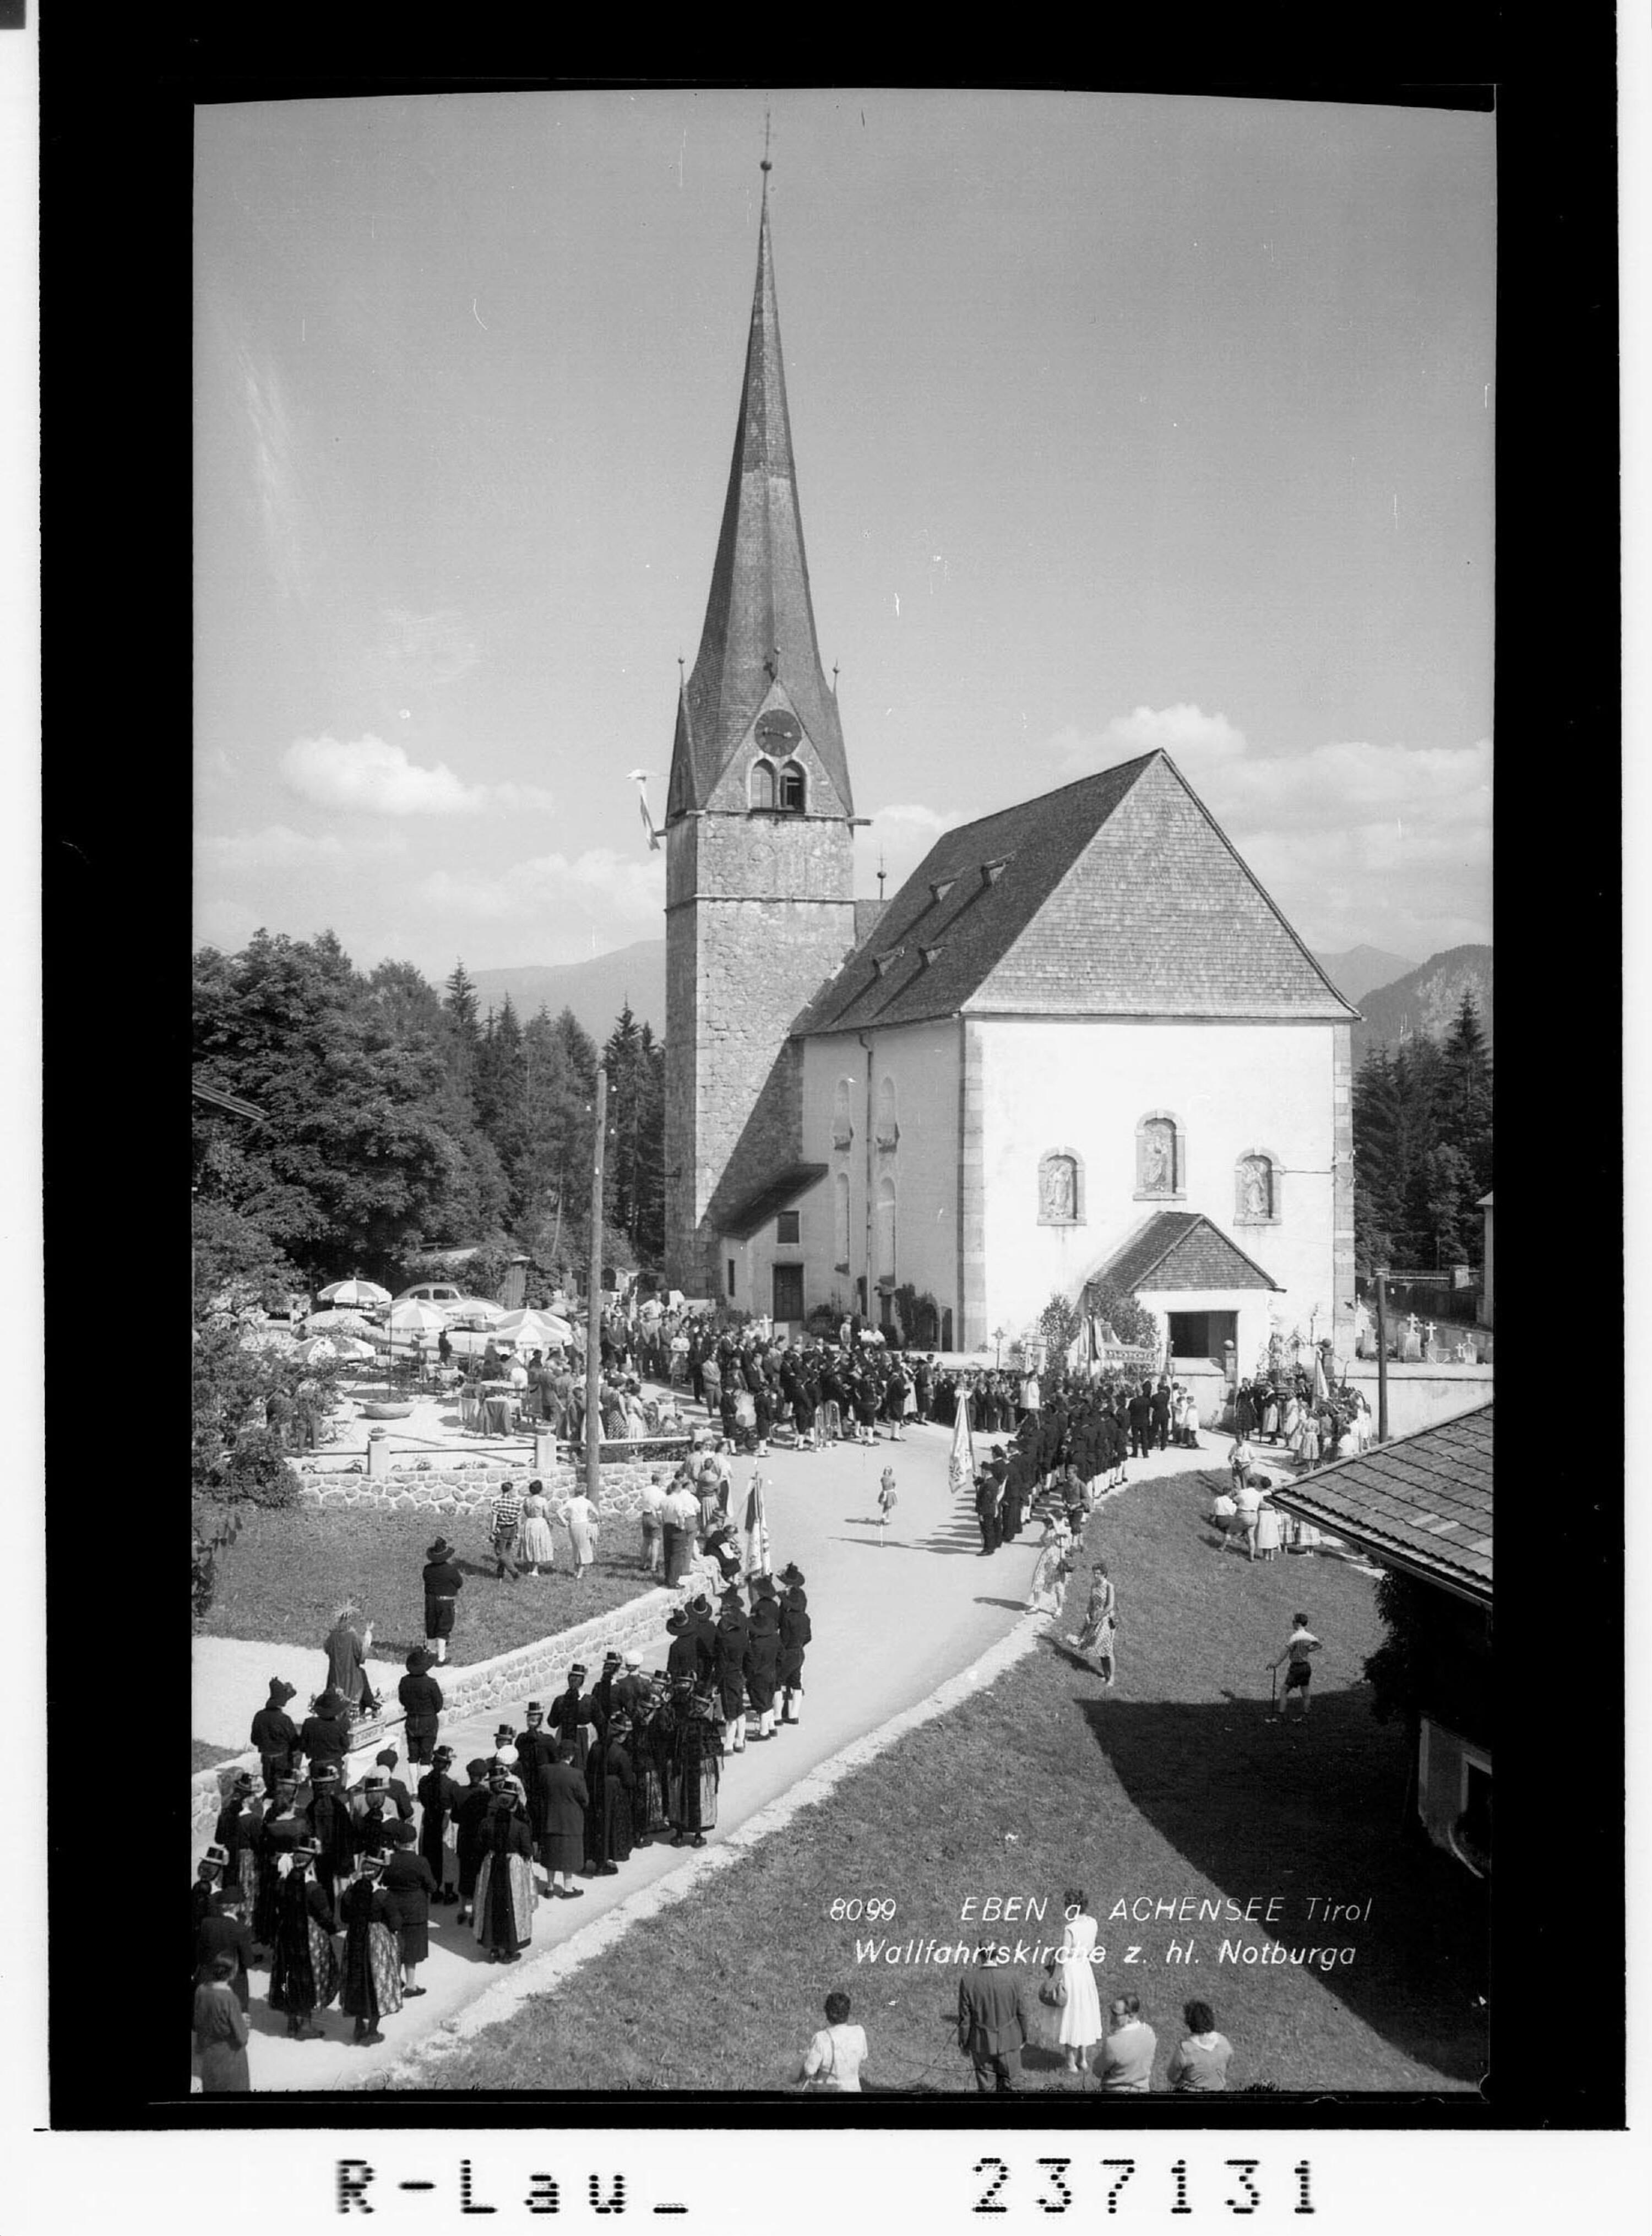 Eben am Achensee / Tirol / Wallfahrtskirche zur heiligen Notburga></div>


    <hr>
    <div class=